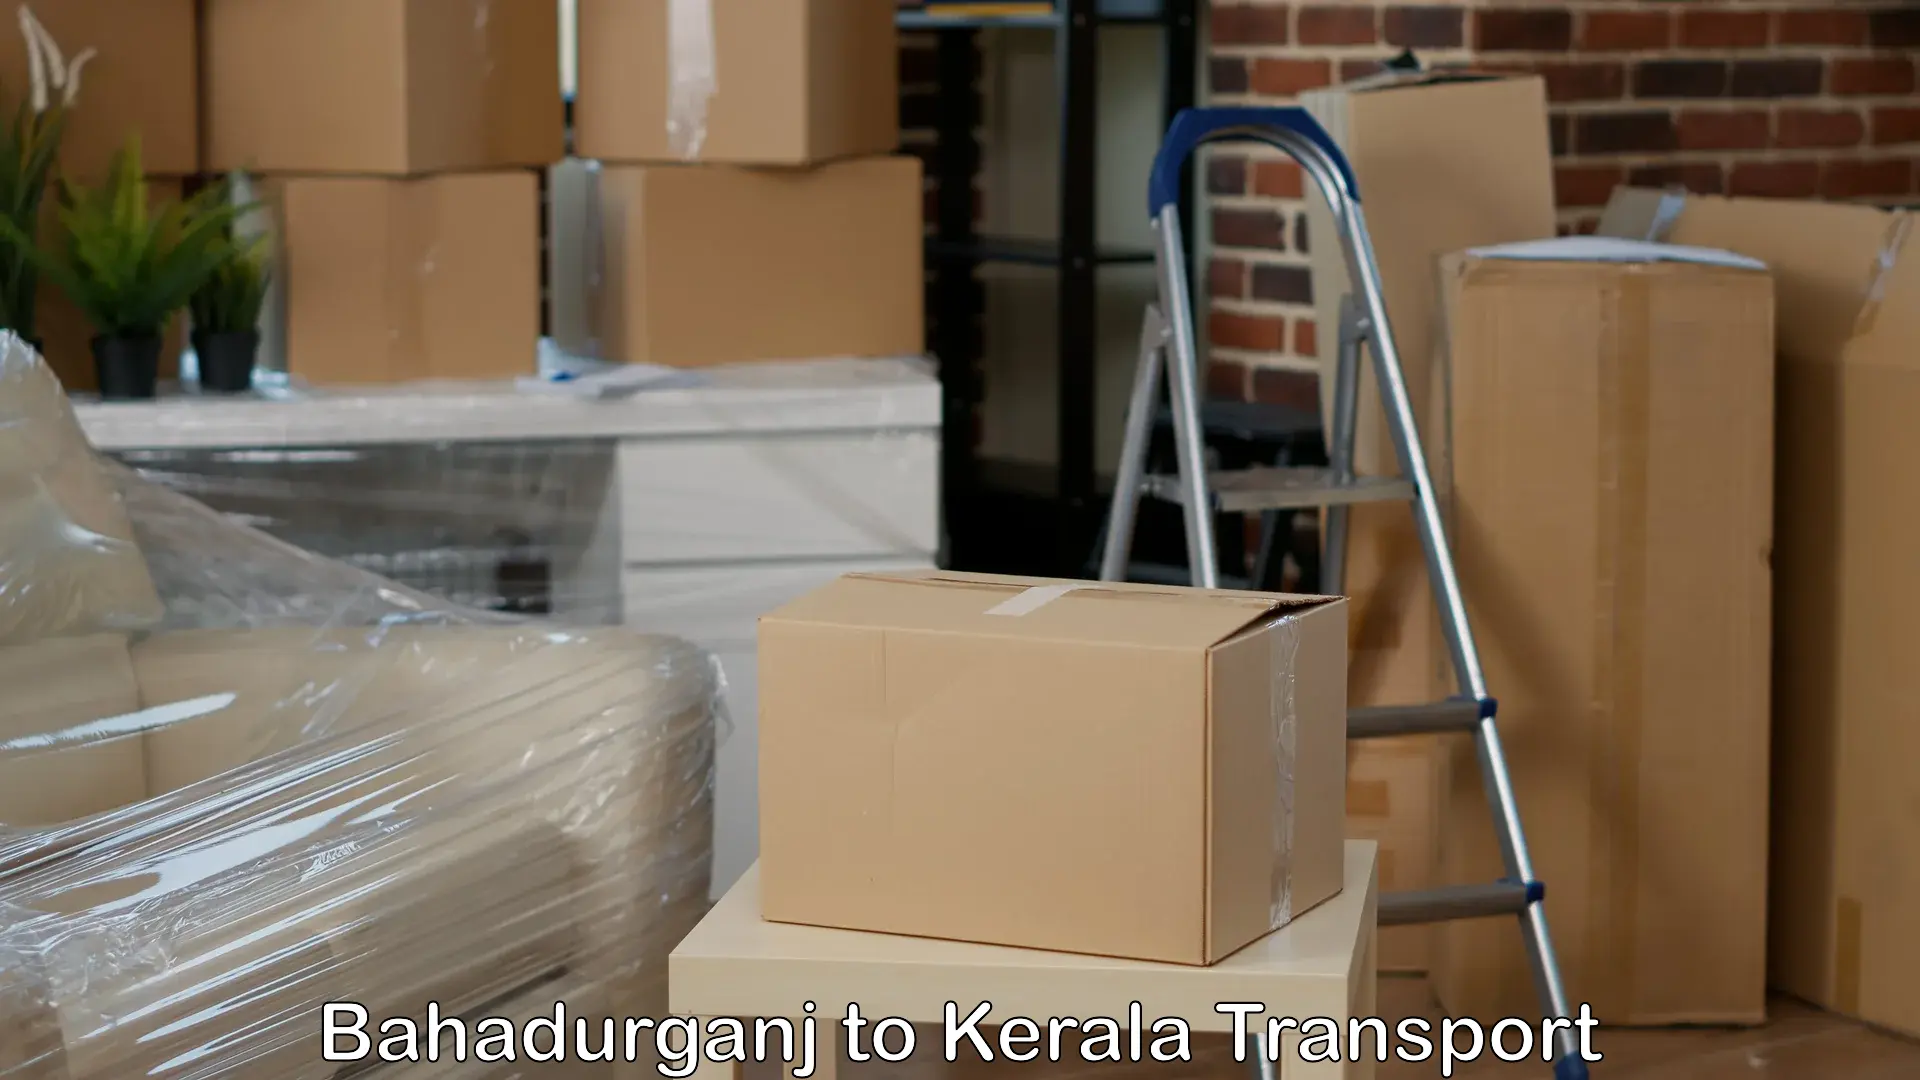 Package delivery services Bahadurganj to Manjeshwar